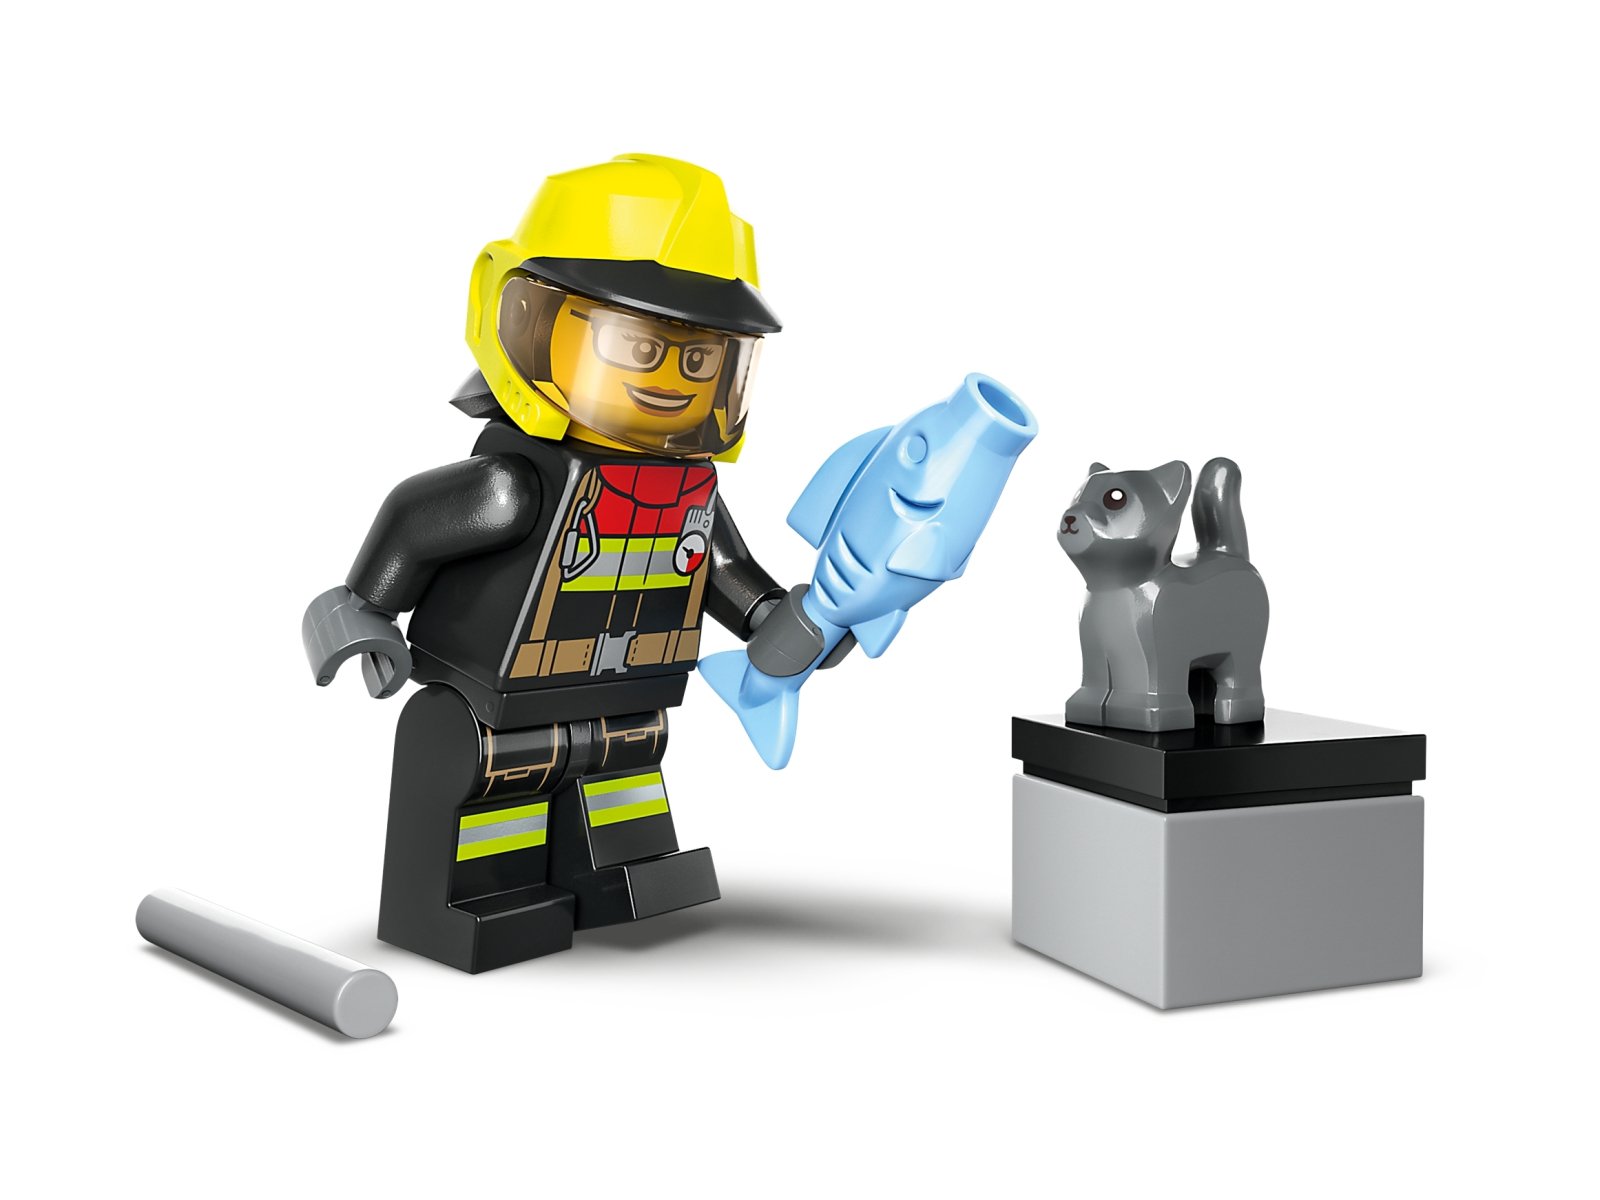 LEGO 60393 Wóz strażacki 4x4 – misja ratunkowa